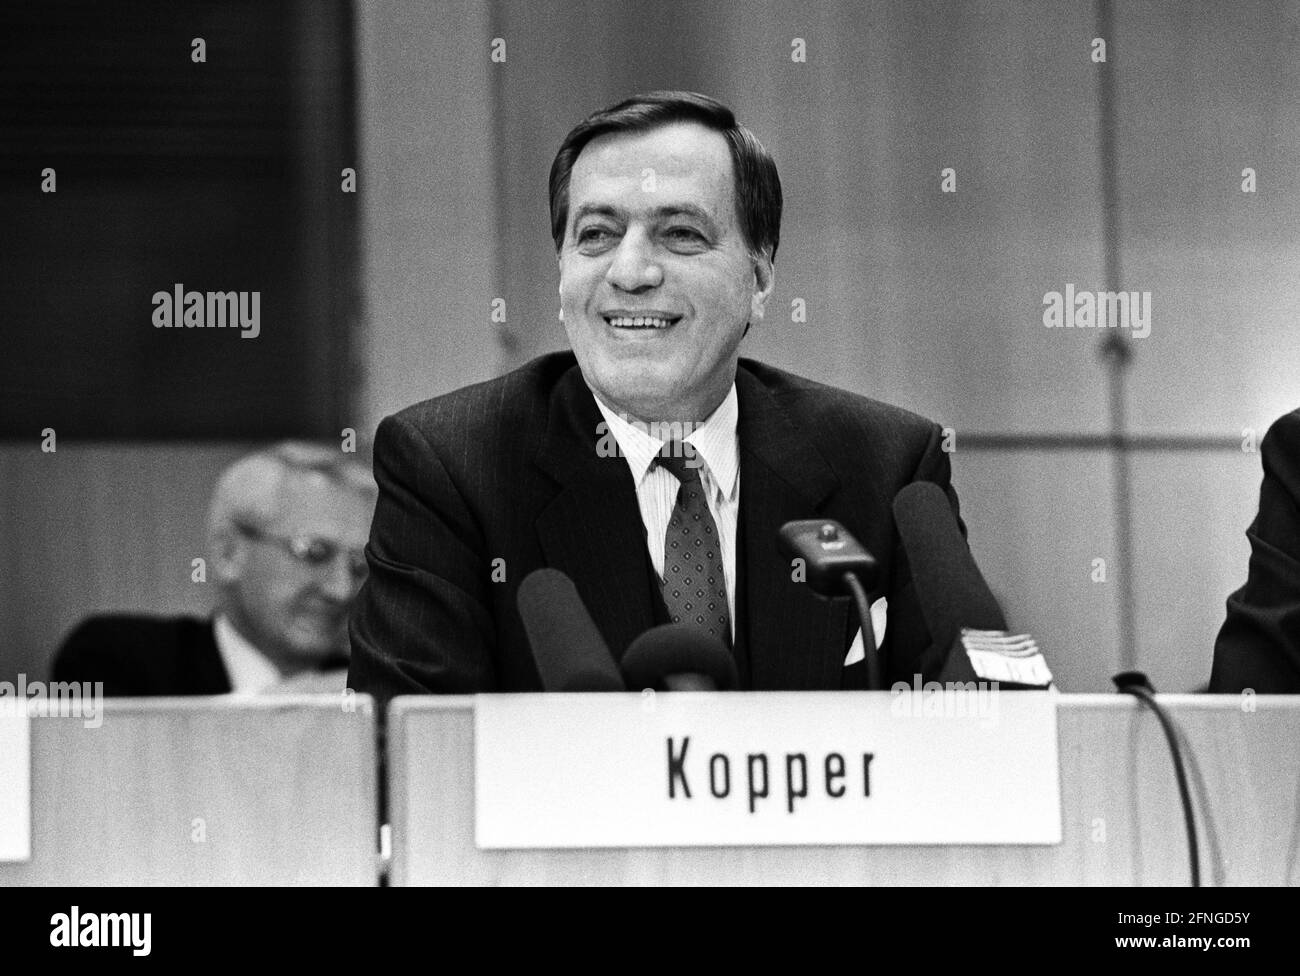 Germania, Francoforte, 29.03.1990. Archivio n.: 15-4-02 Deutsche Bank Conferenza stampa annuale Foto: Hilmar Kopper, Presidente del Consiglio di Amministrazione [traduzione automatizzata] Foto Stock